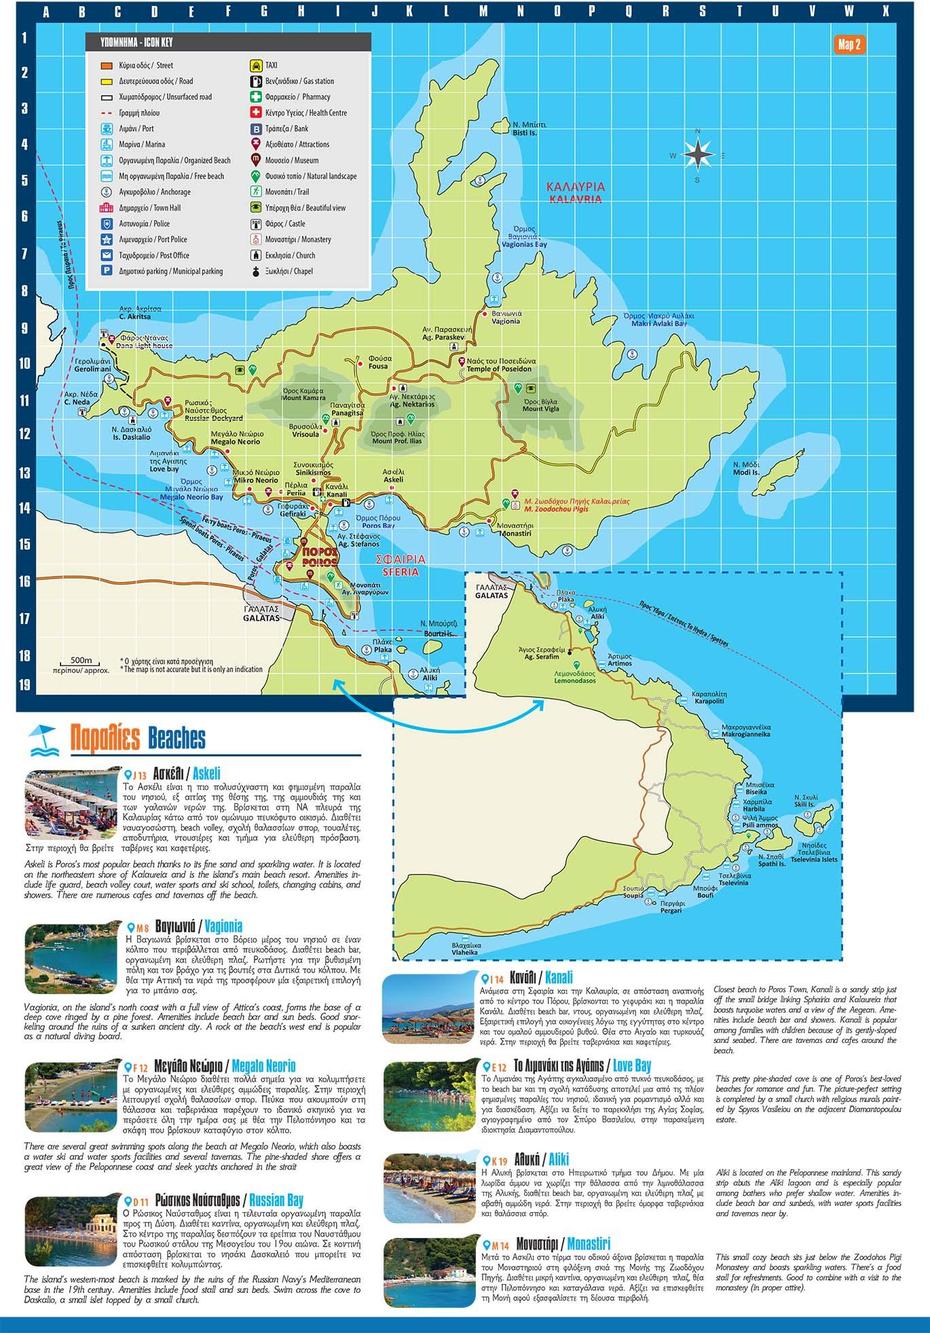 Poros Island Travel Map, Poro, Philippines, Poros Greece, Poros Beaches